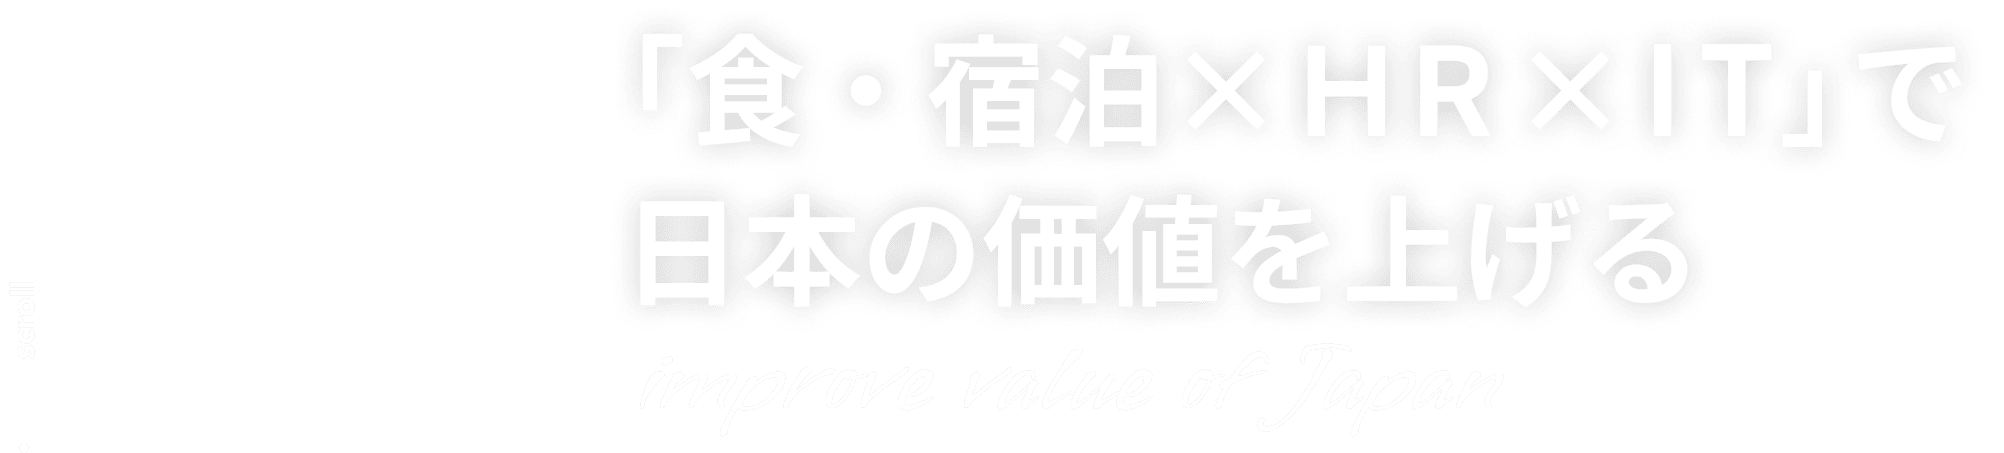 「インバウンド×HR×IT」で日本の価値を上げる